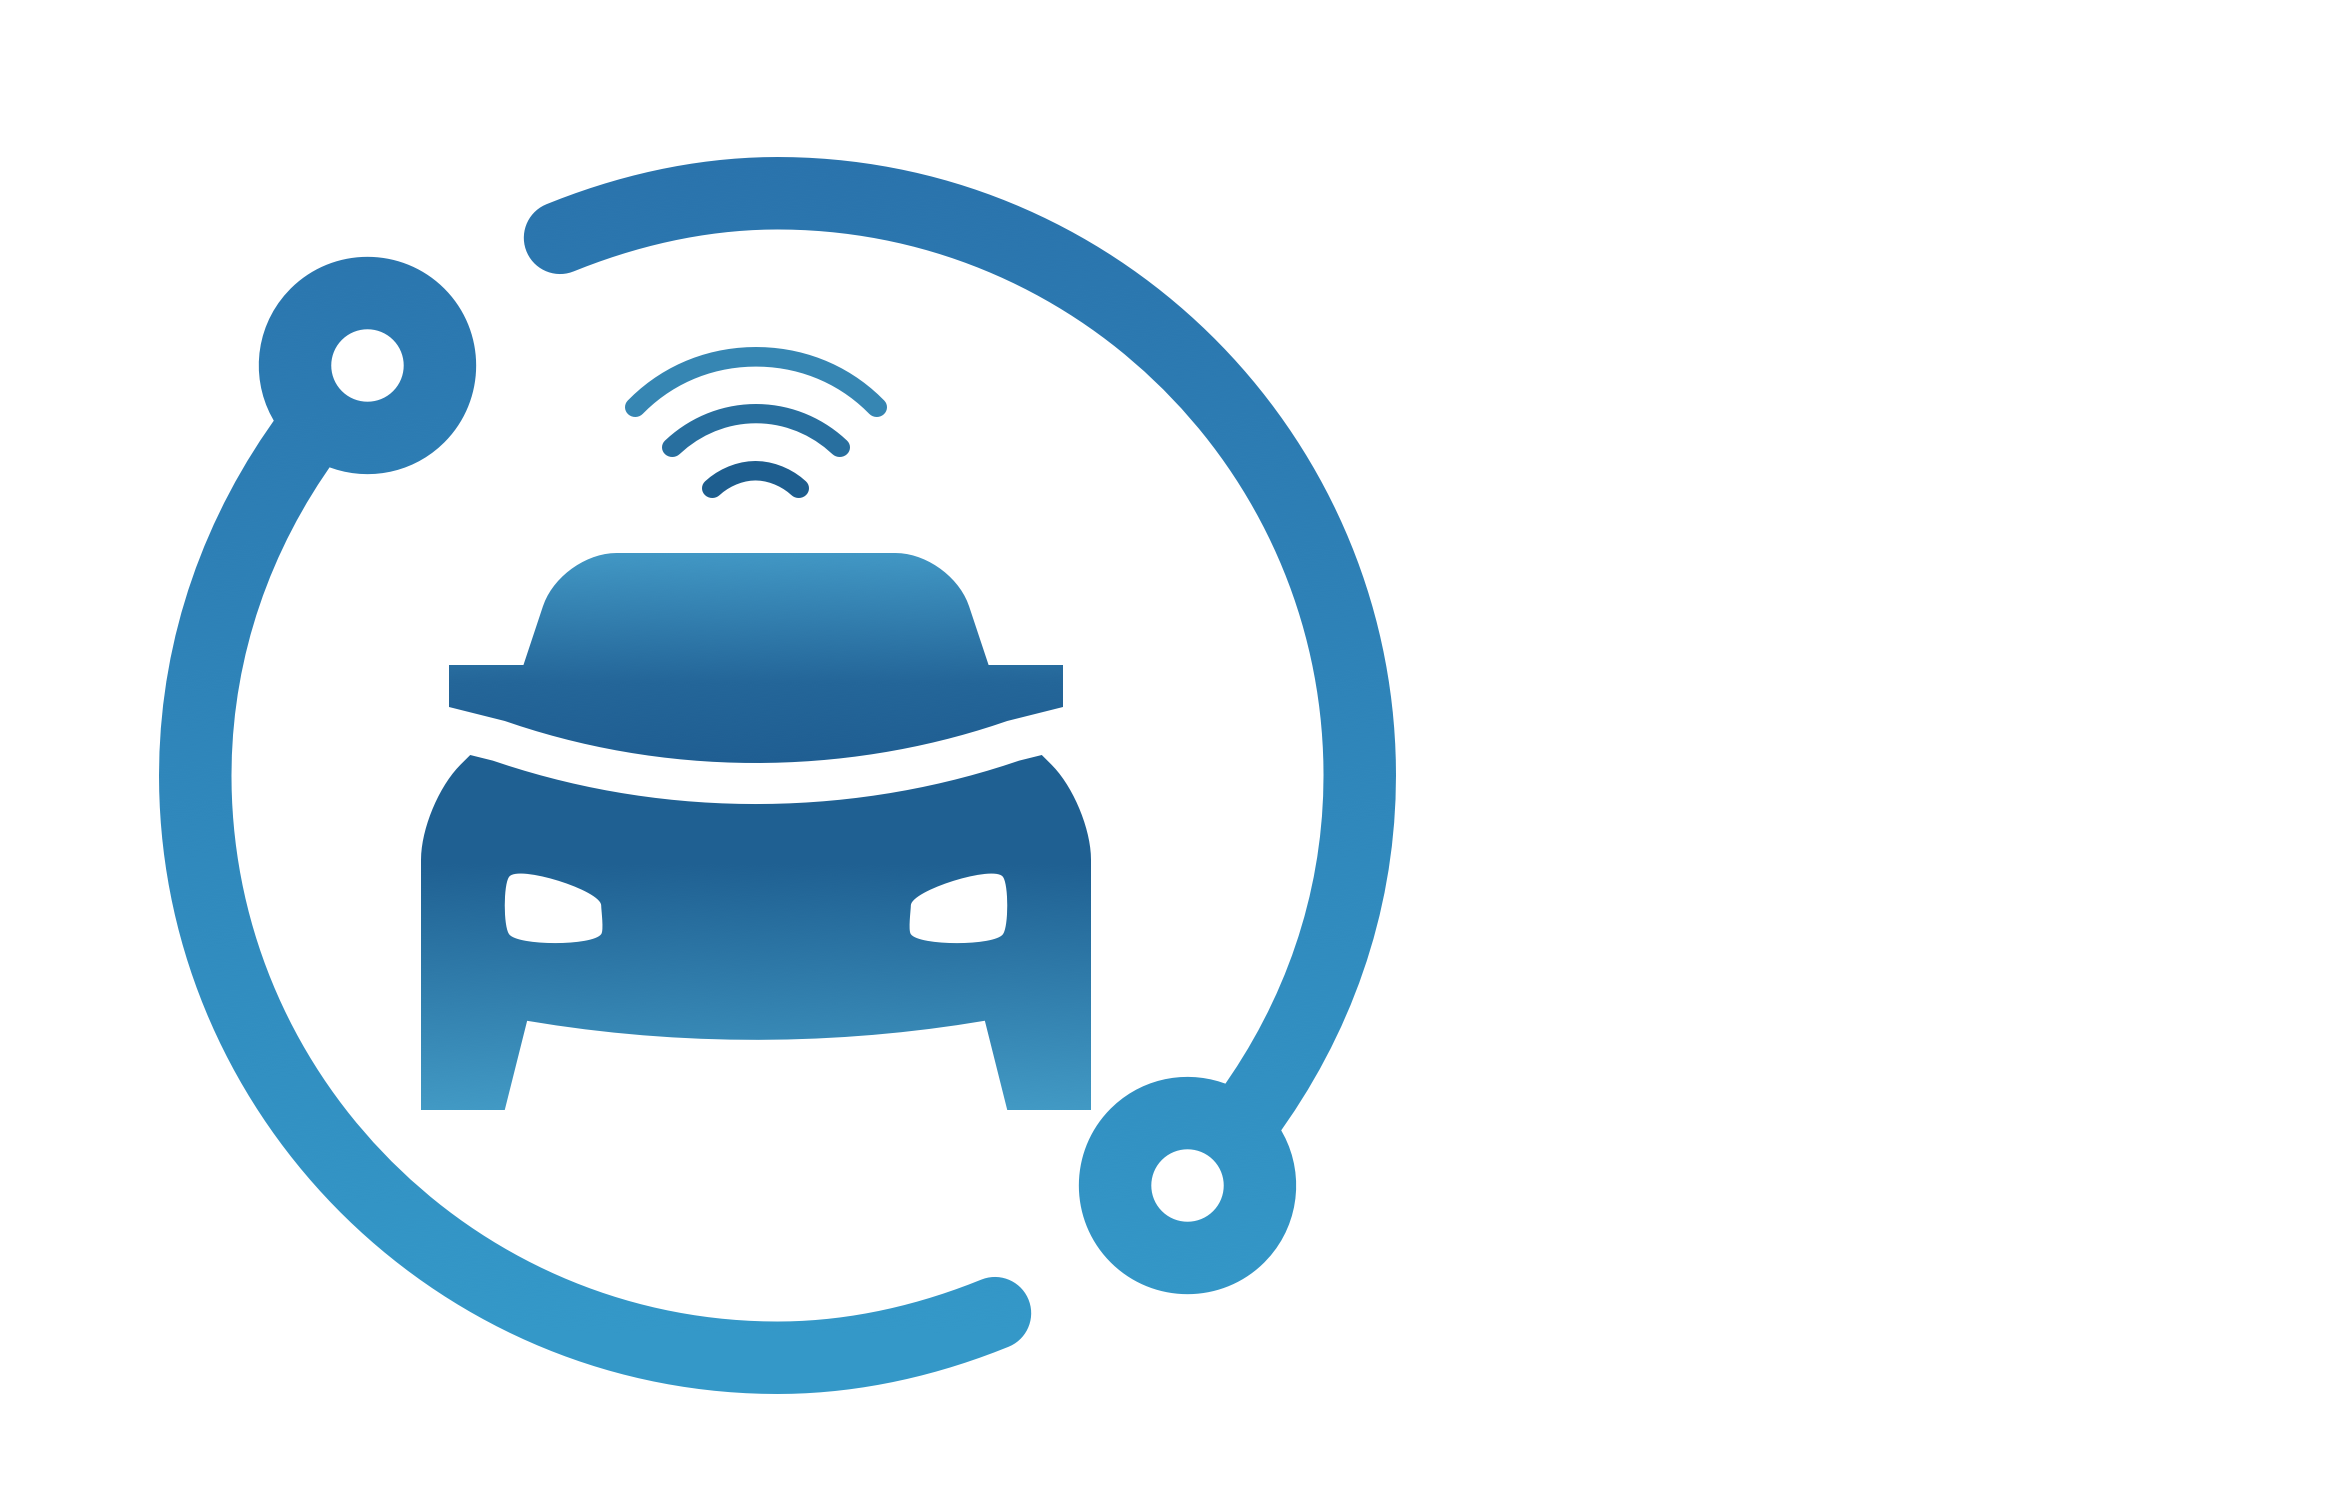 ADAS Service Point